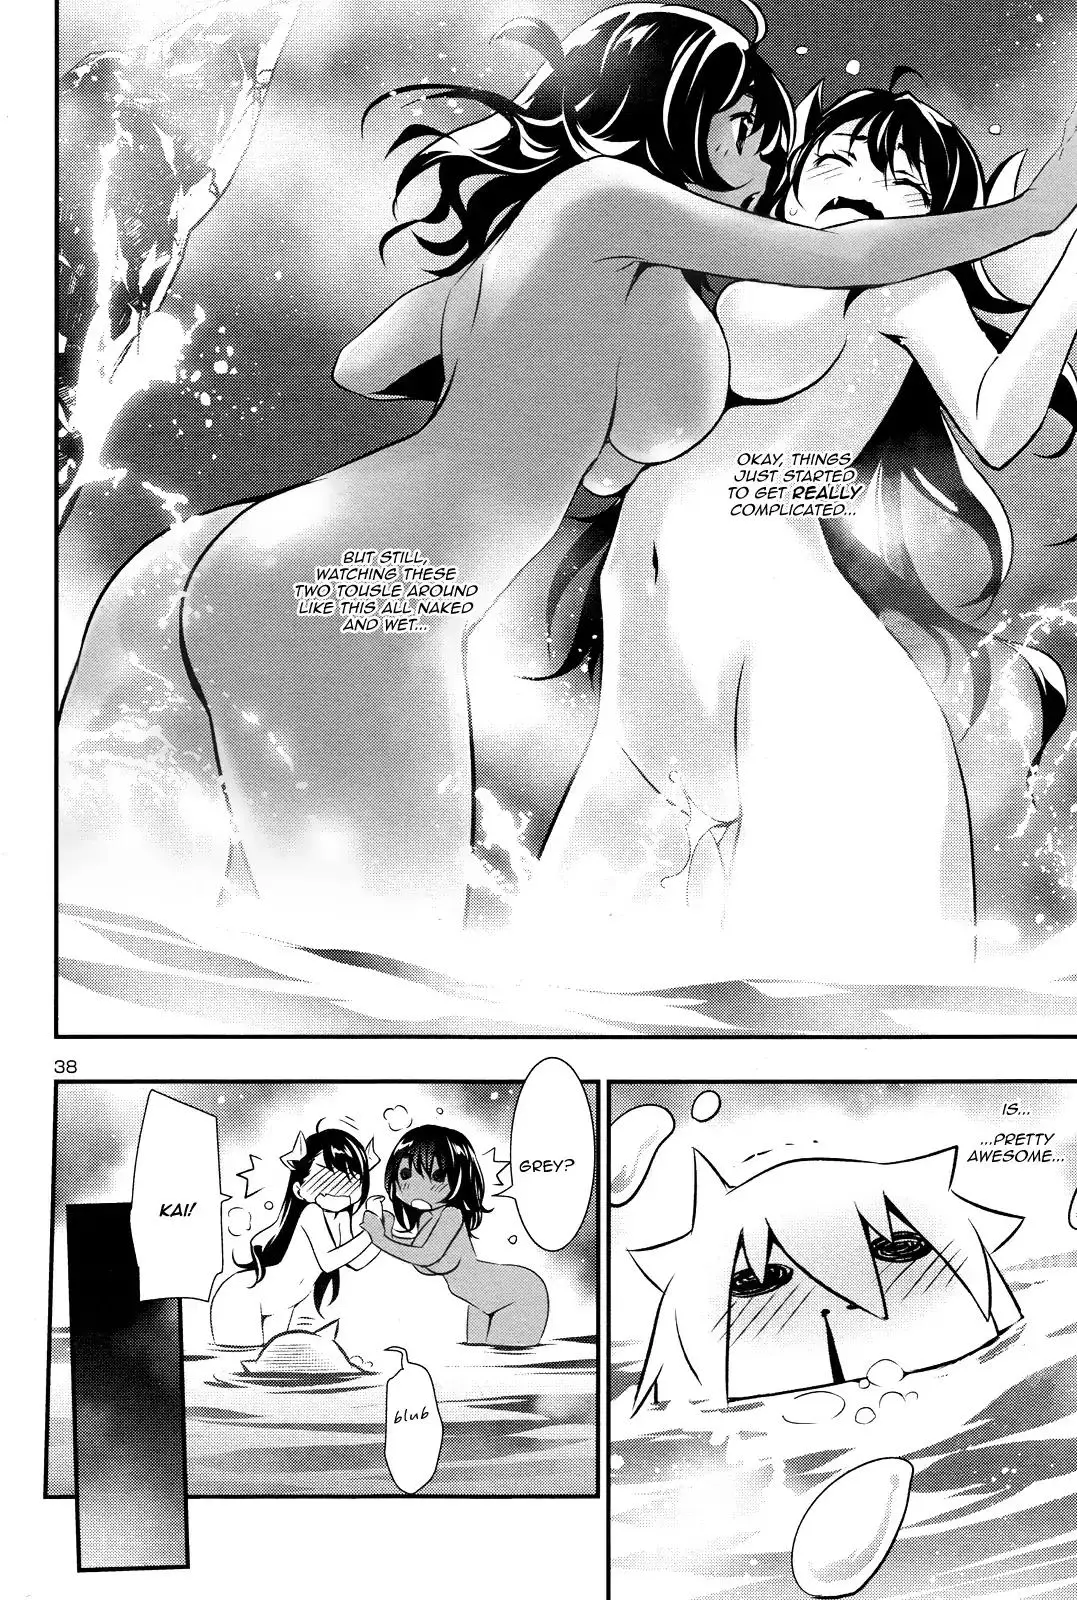 Shinju no Nectar - 13 page 36